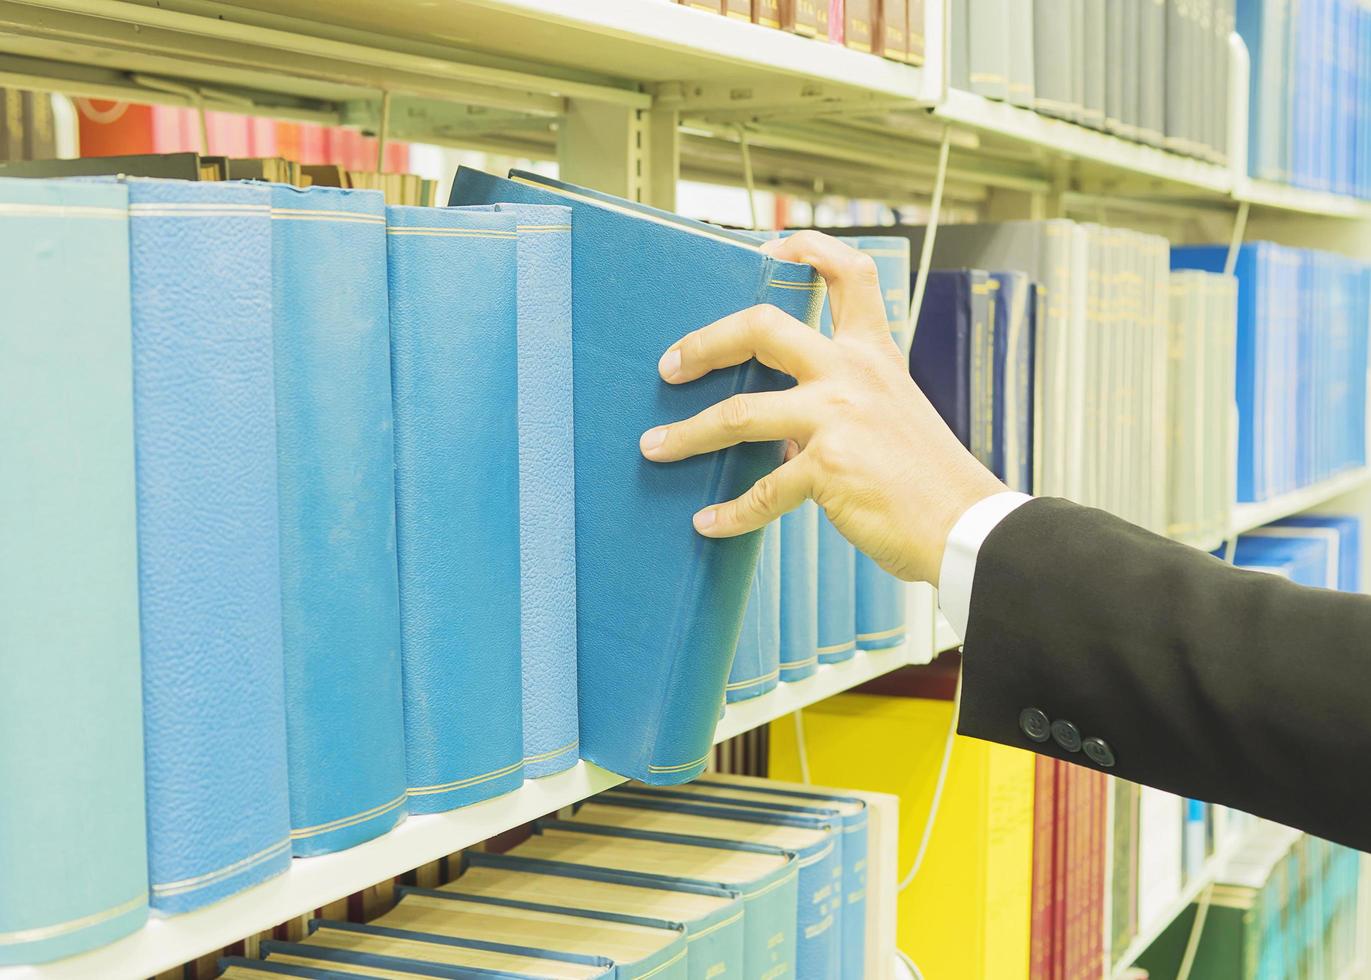 foto vintage de um homem está selecionando o livro da estante em uma biblioteca